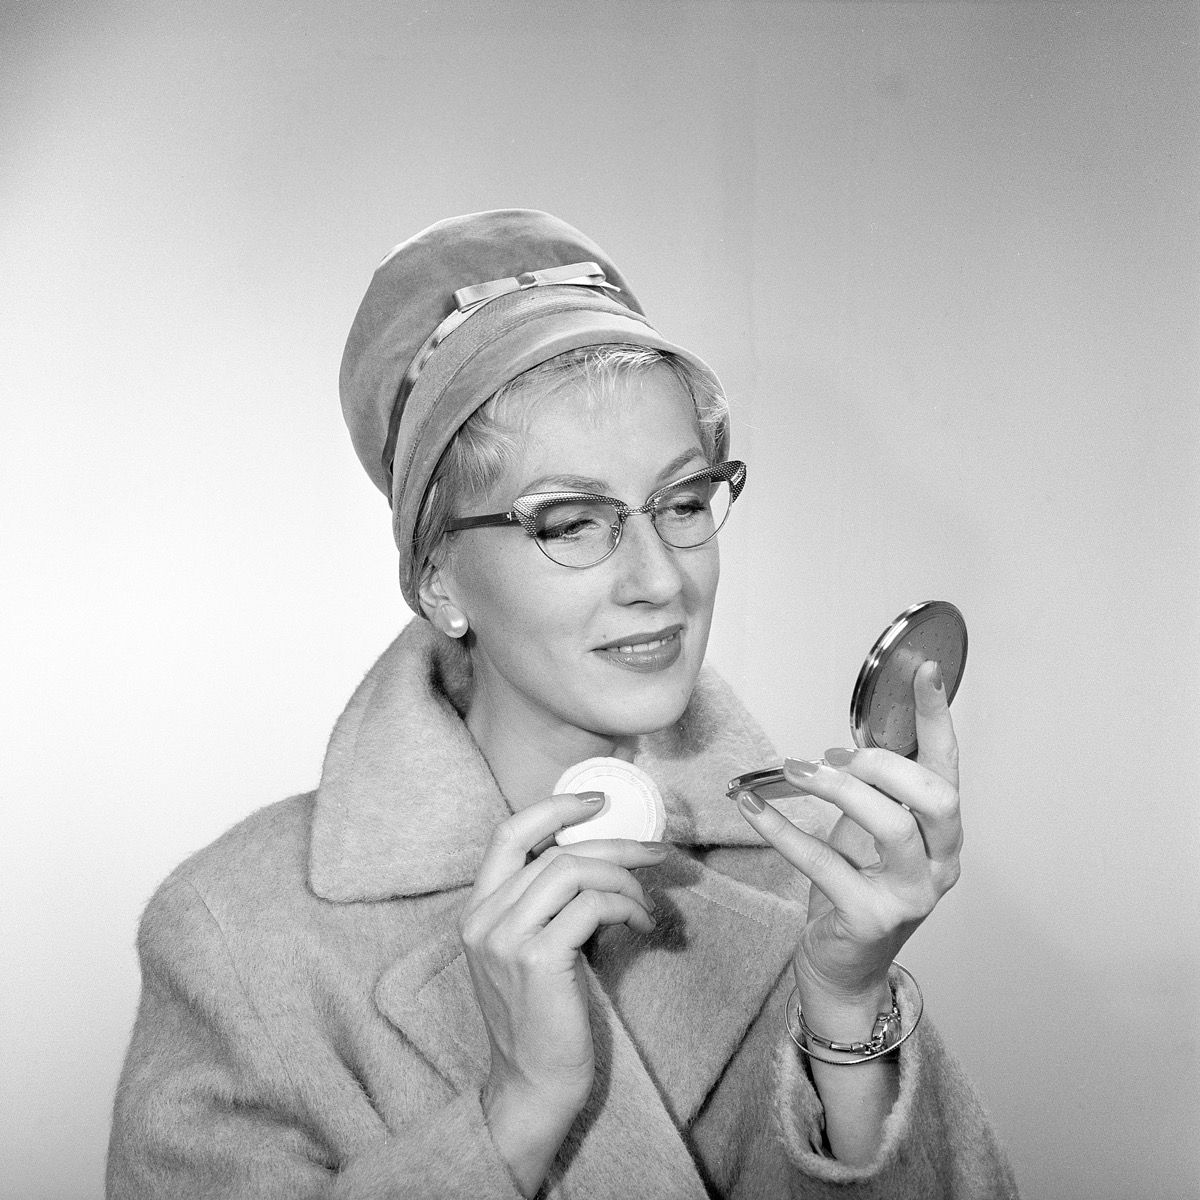 Machiajul anilor 1950. O tânără se privește în oglinda de buzunar și își îmbunătățește machiajul. Poartă o pălărie la modă, ochelari tipici anilor 50 și o haină. Anii 1950